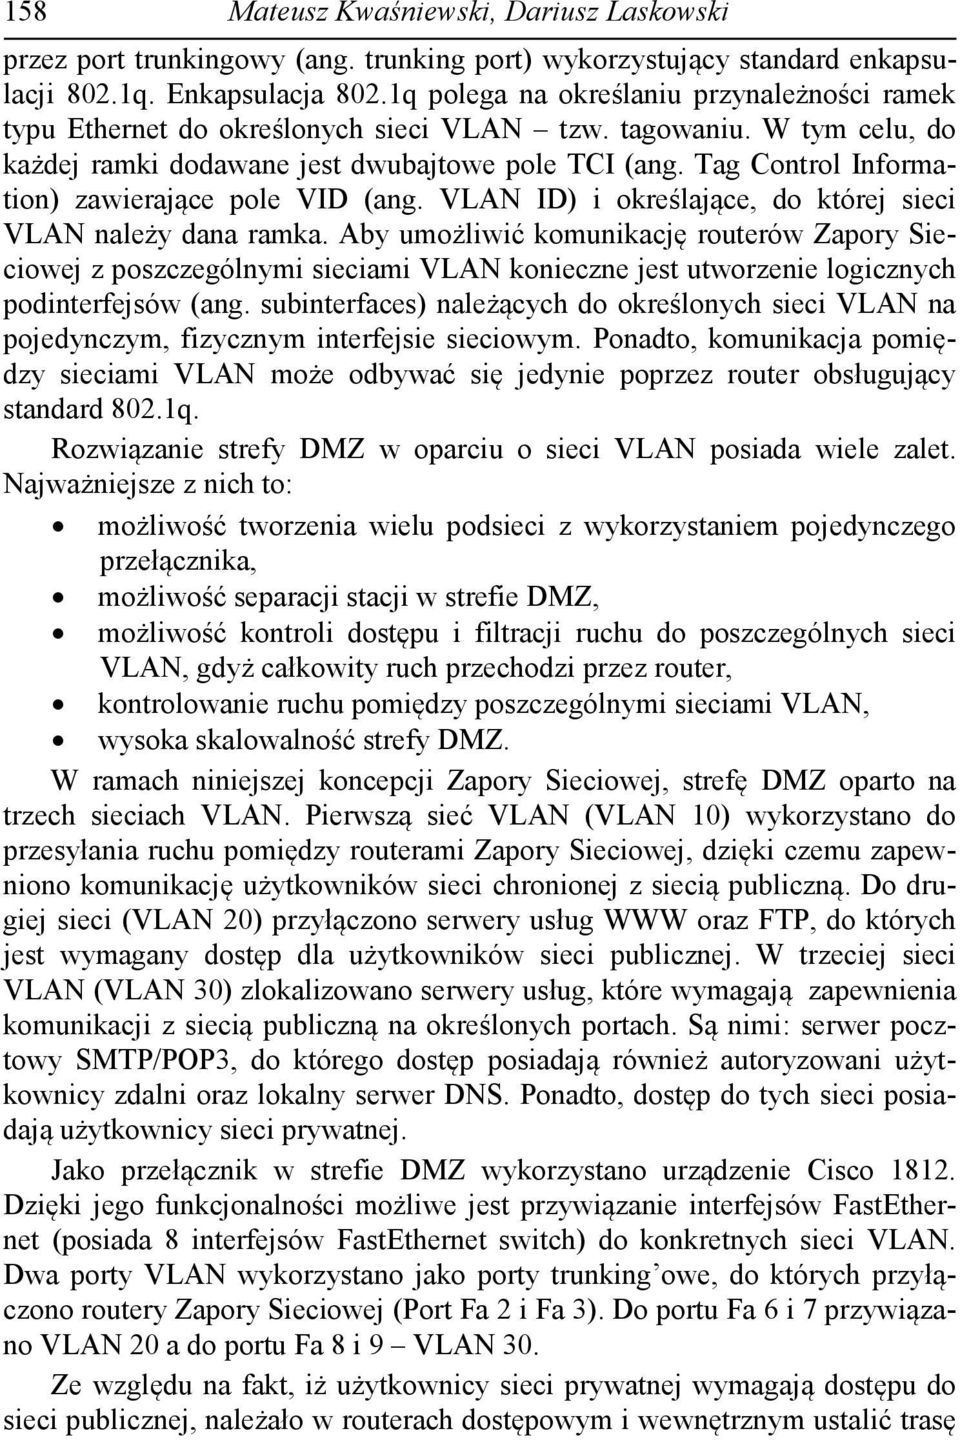 Tag Control Information) zawierające pole VID (ang. VLAN ID) i określające, do której sieci VLAN należy dana ramka.